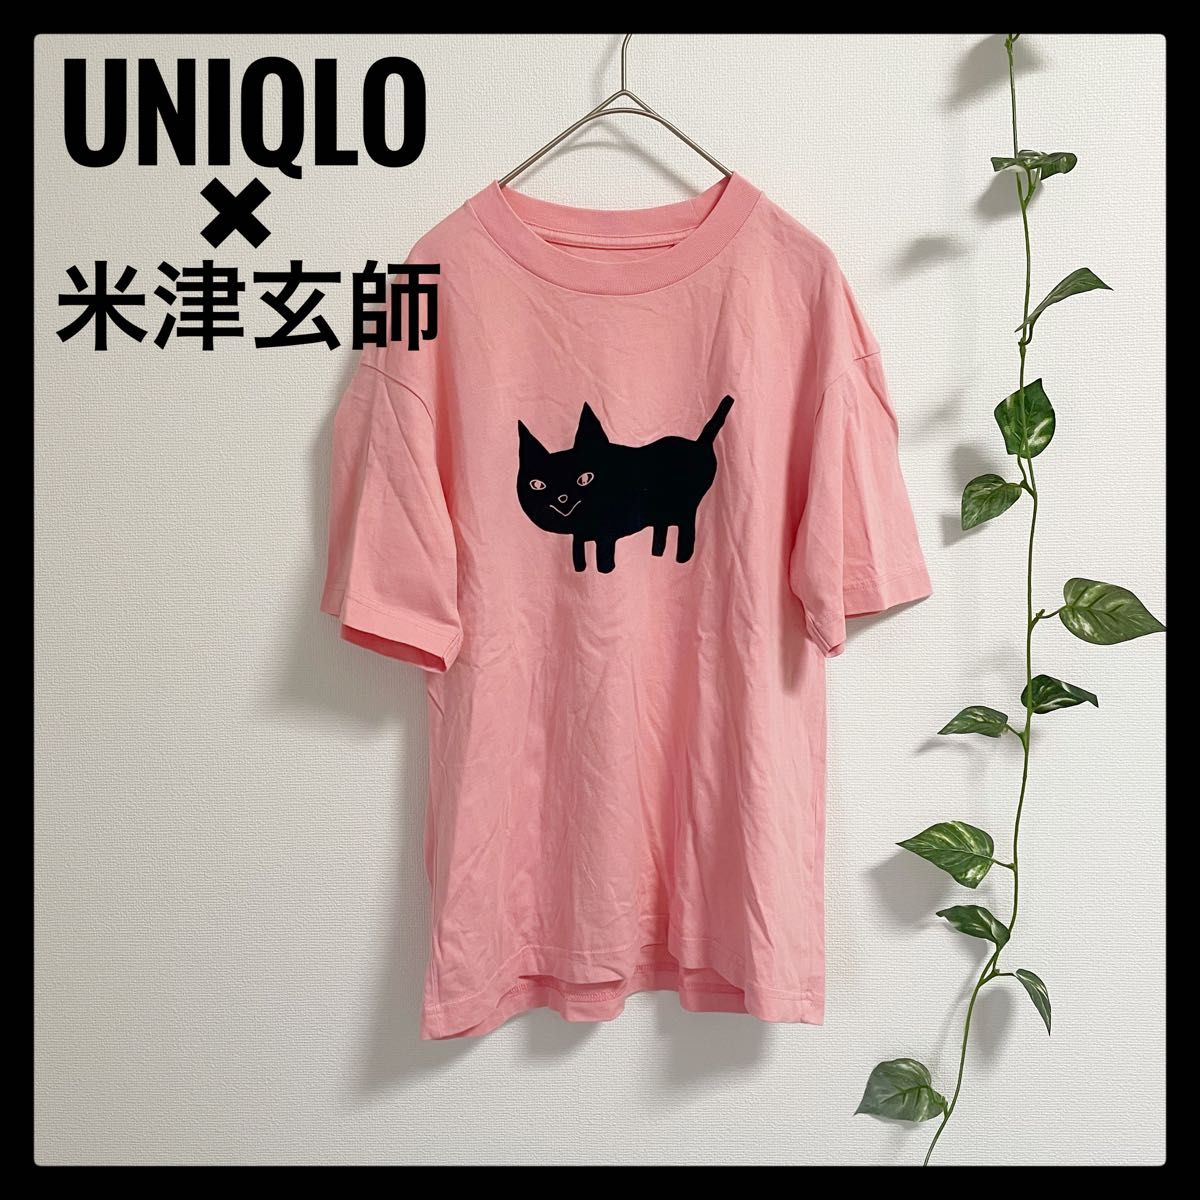 UNIQLO ユニクロ 米津玄師 コラボ 半袖 Tシャツ 綿100% ピンク オーバーサイズ Lサイズ相当